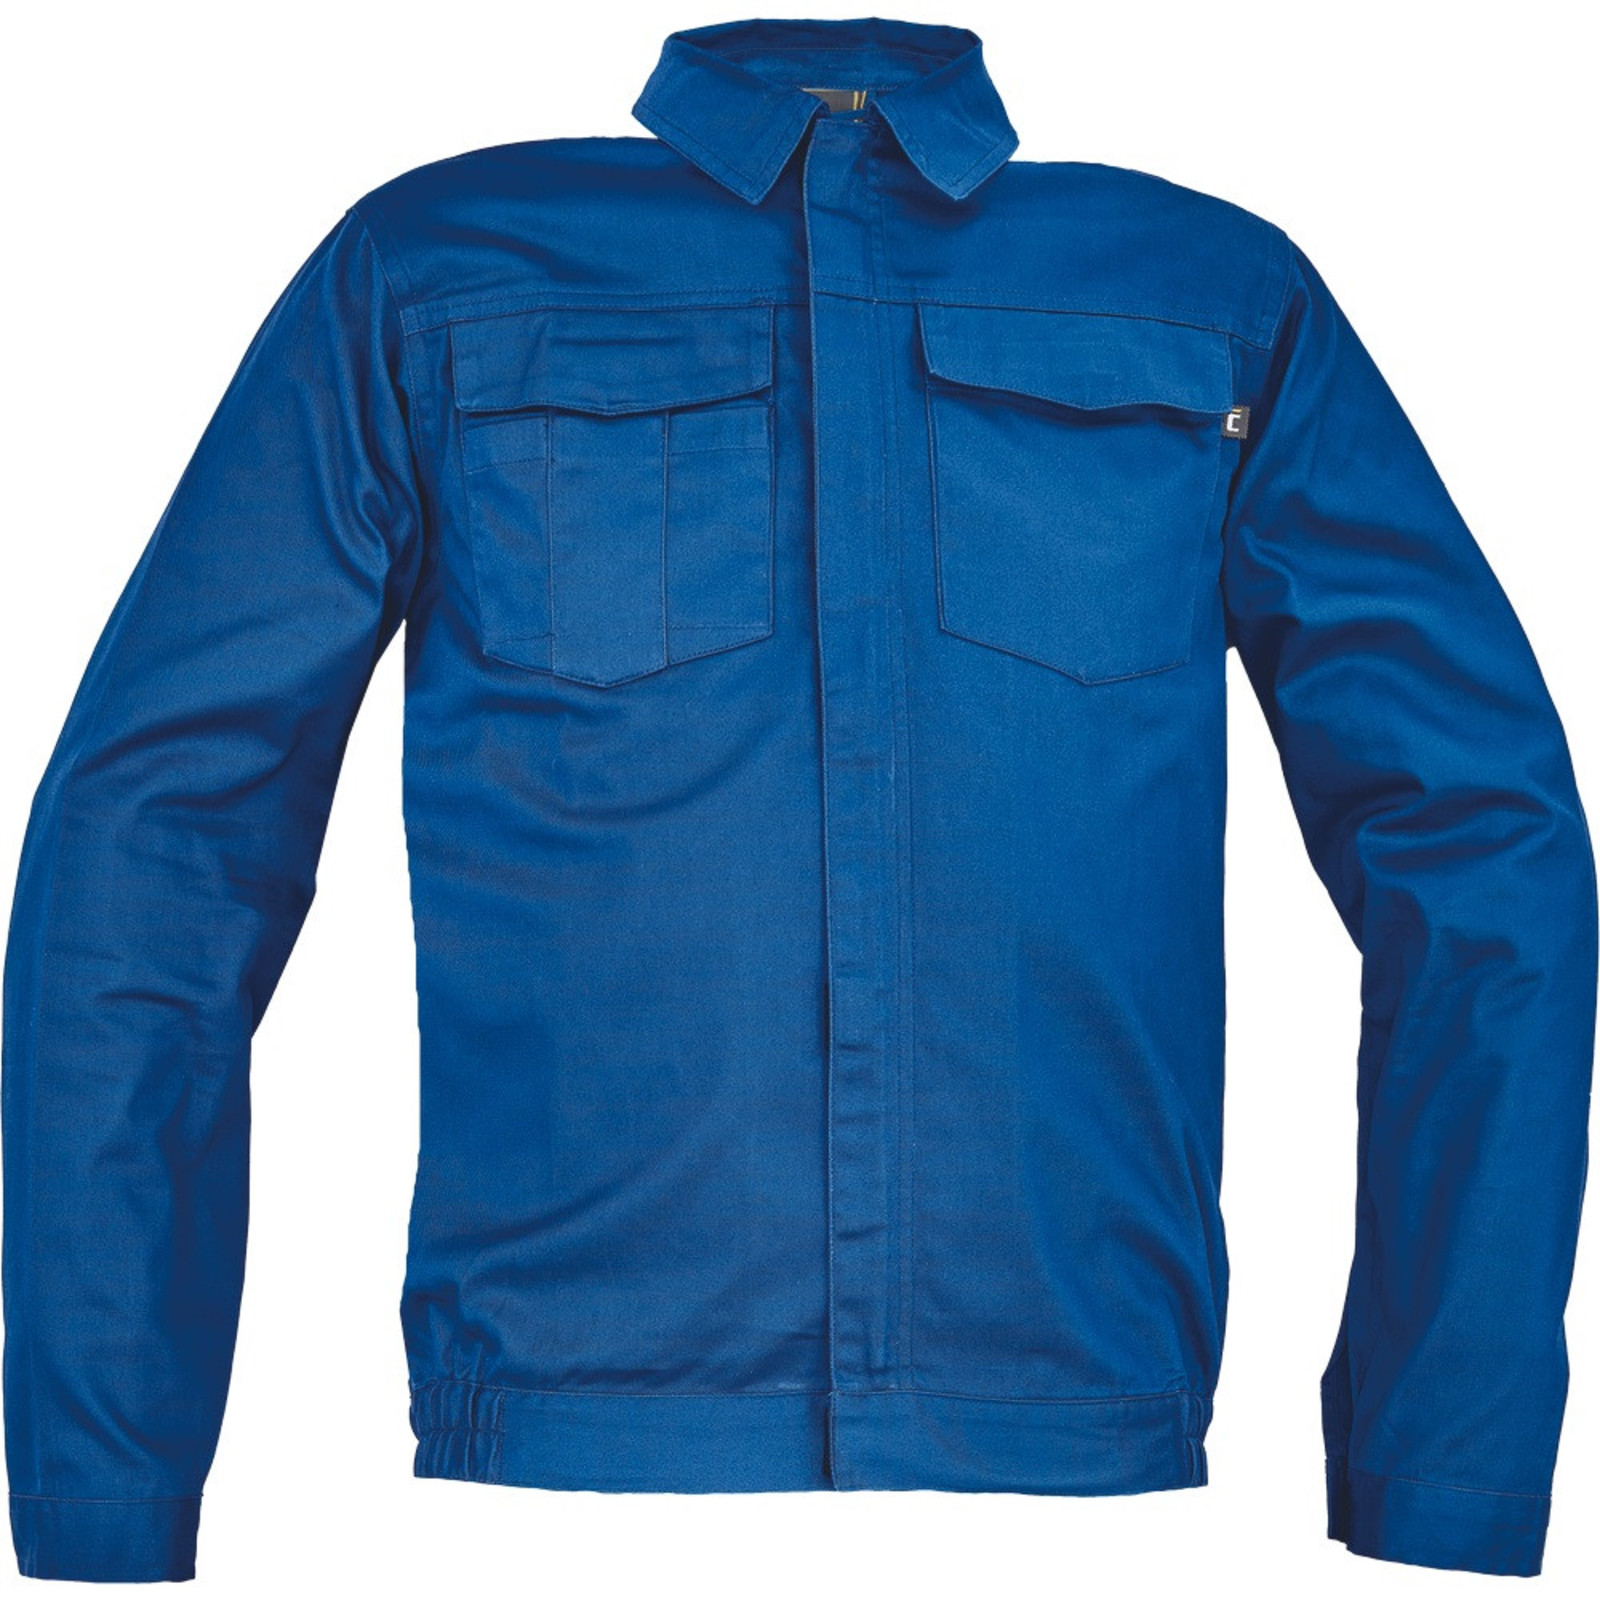 Pánska ľahká pracovná bunda Cerva Ciudades Basic Zaragoza - veľkosť: 62, farba: royal blue